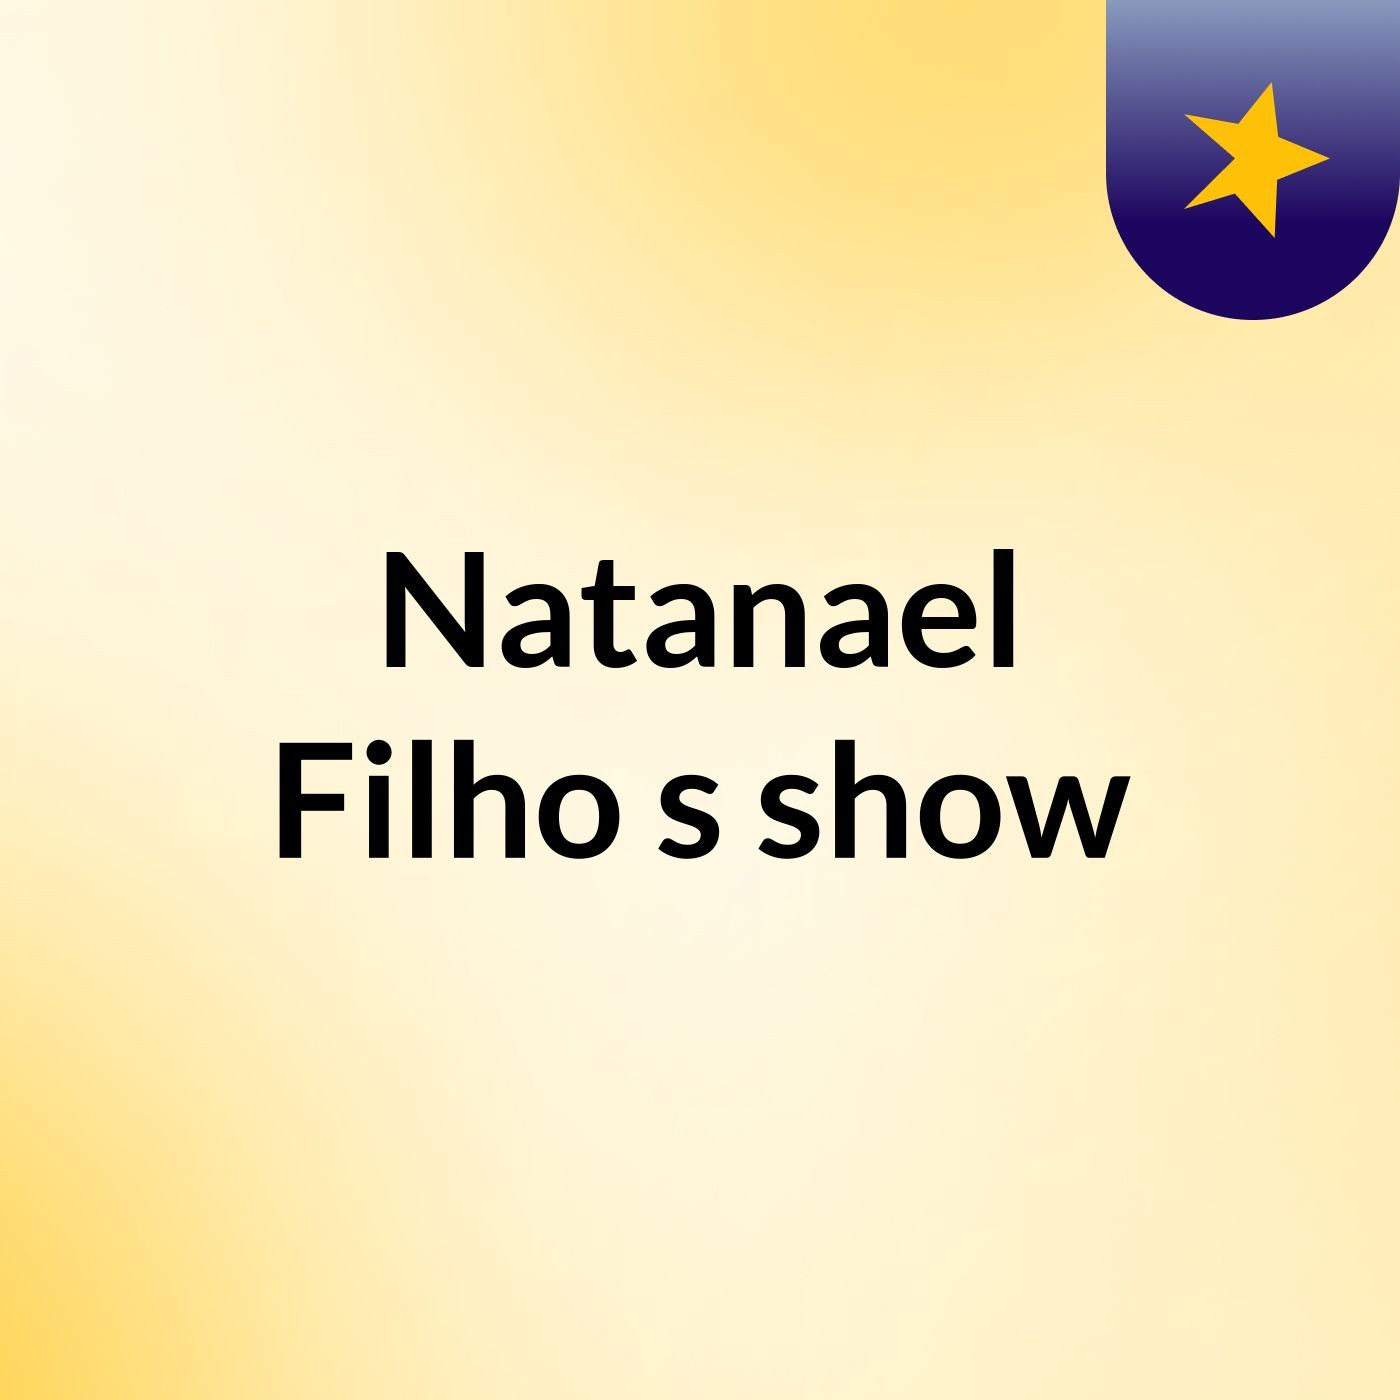 Natanael Filho's show